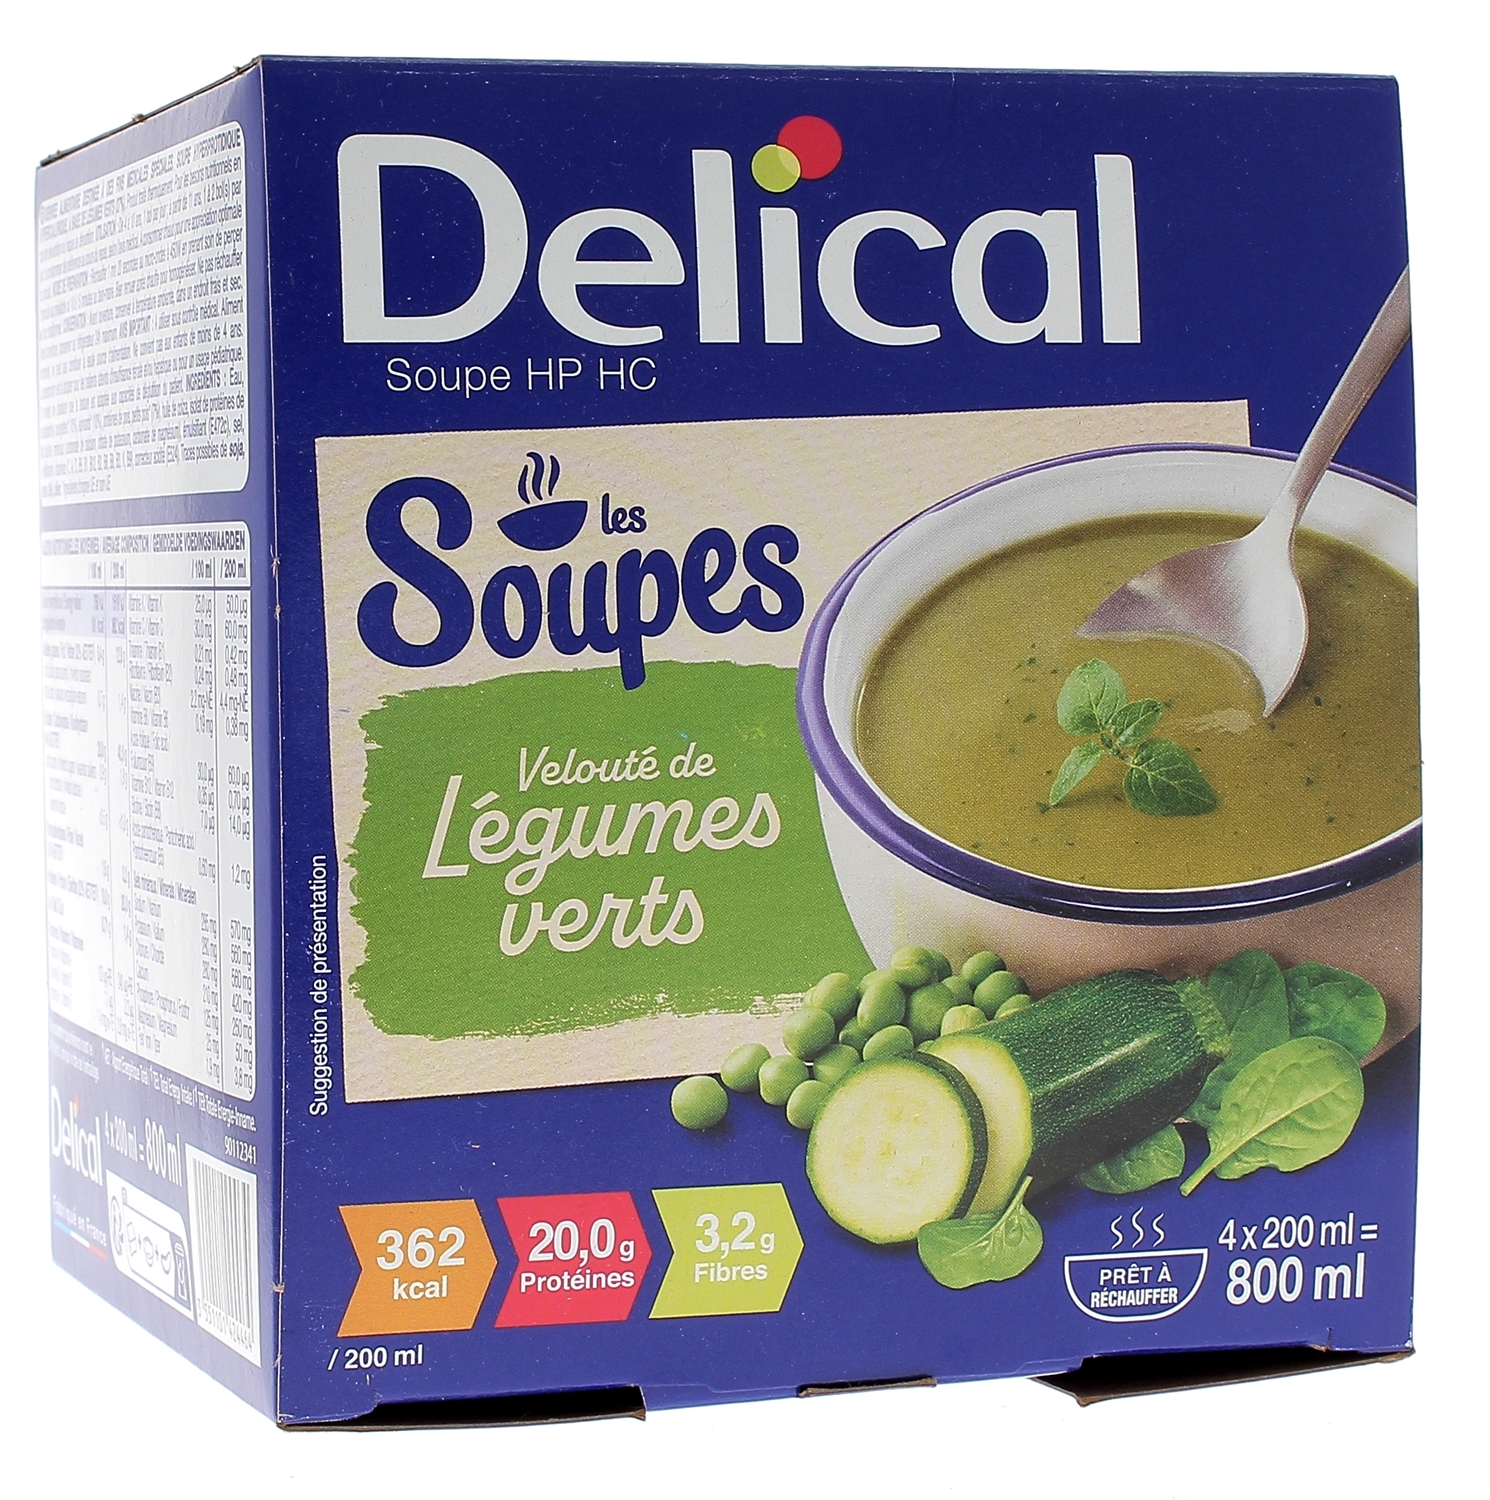 Delical Soupe HP/HC Velouté de légumes verts - 4 bols de 200ml